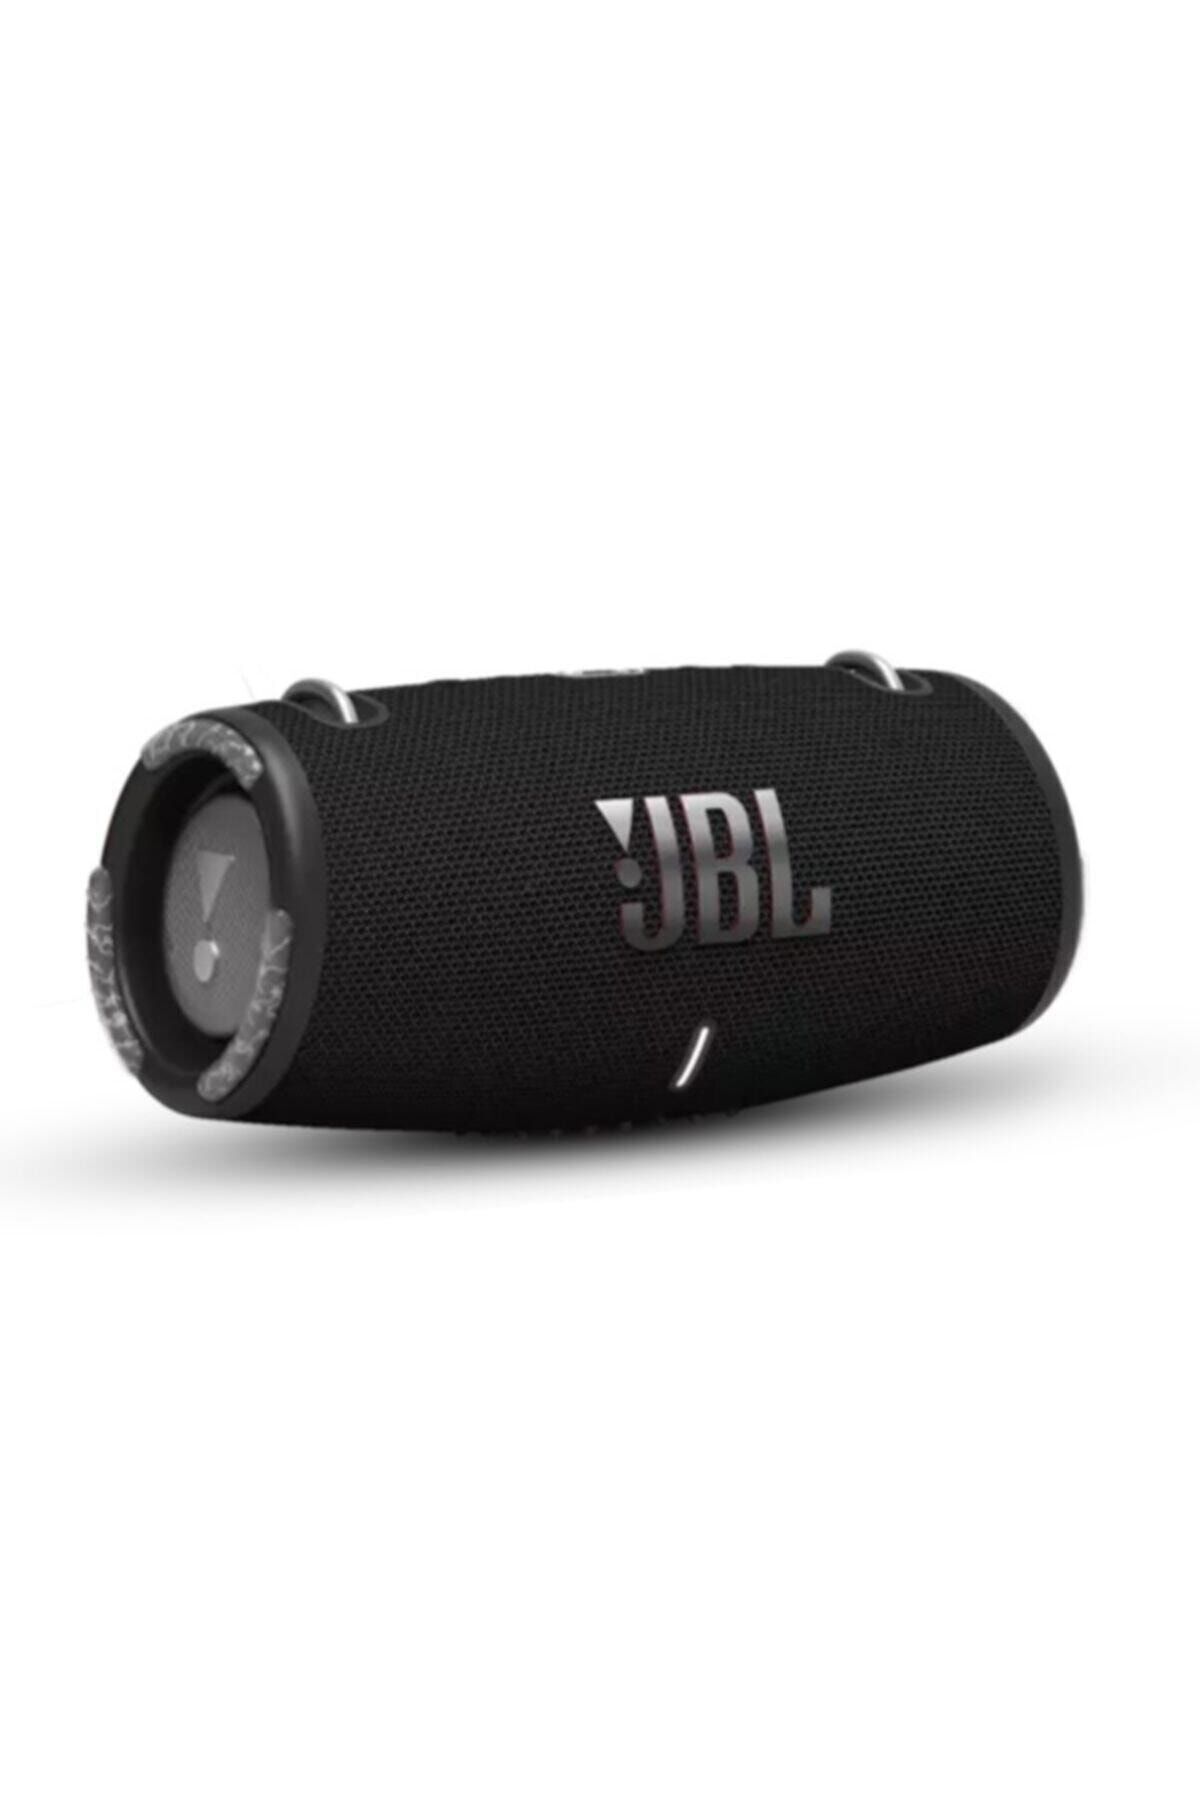 JBL Xtreme 3 Su Geçirmez Taşınabilir Siyah Bluetooth Hoparlör